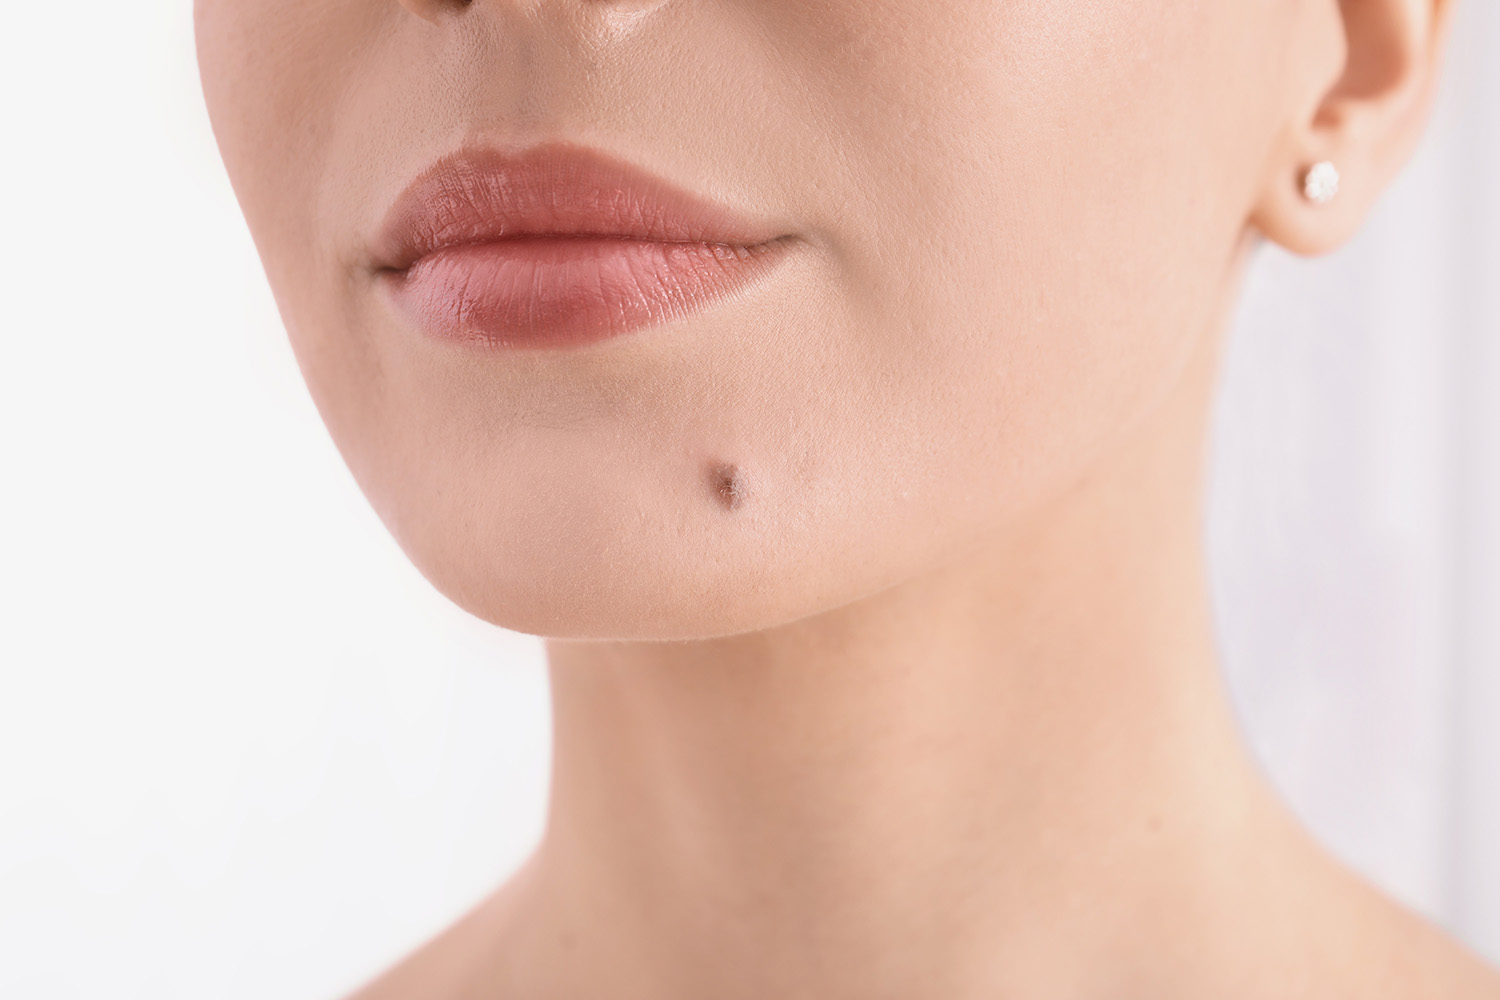 MVZMKG Mund-Kiefer-Gesicht-Chirurgie - Hauttumore entfernen